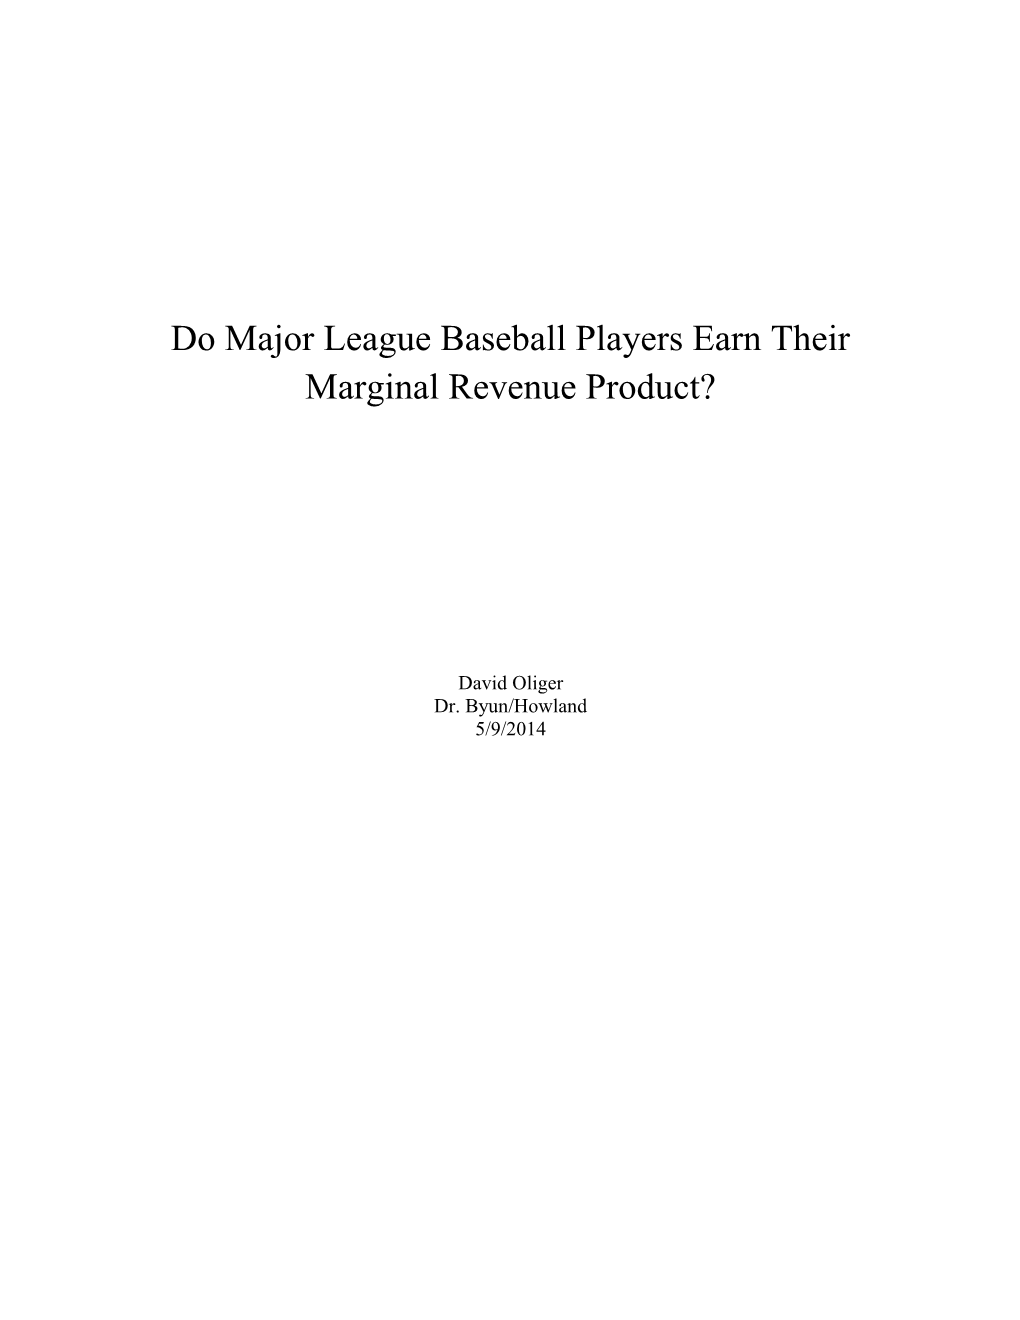 Do Major League Baseball Players Earn Their Marginal Revenue Product?